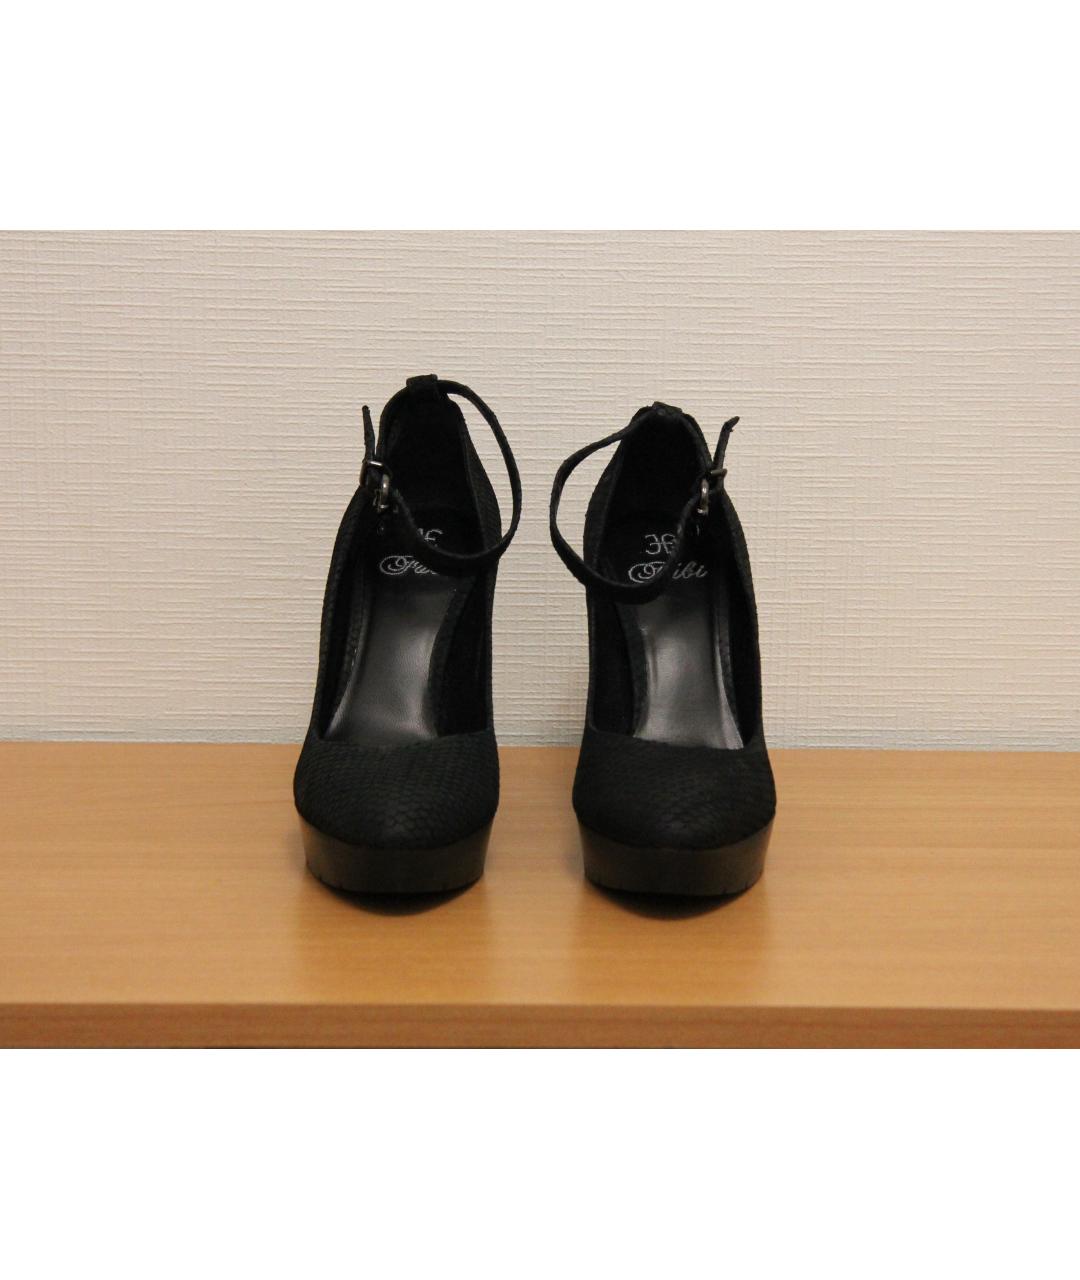 FABI Черные кожаные туфли, фото 2